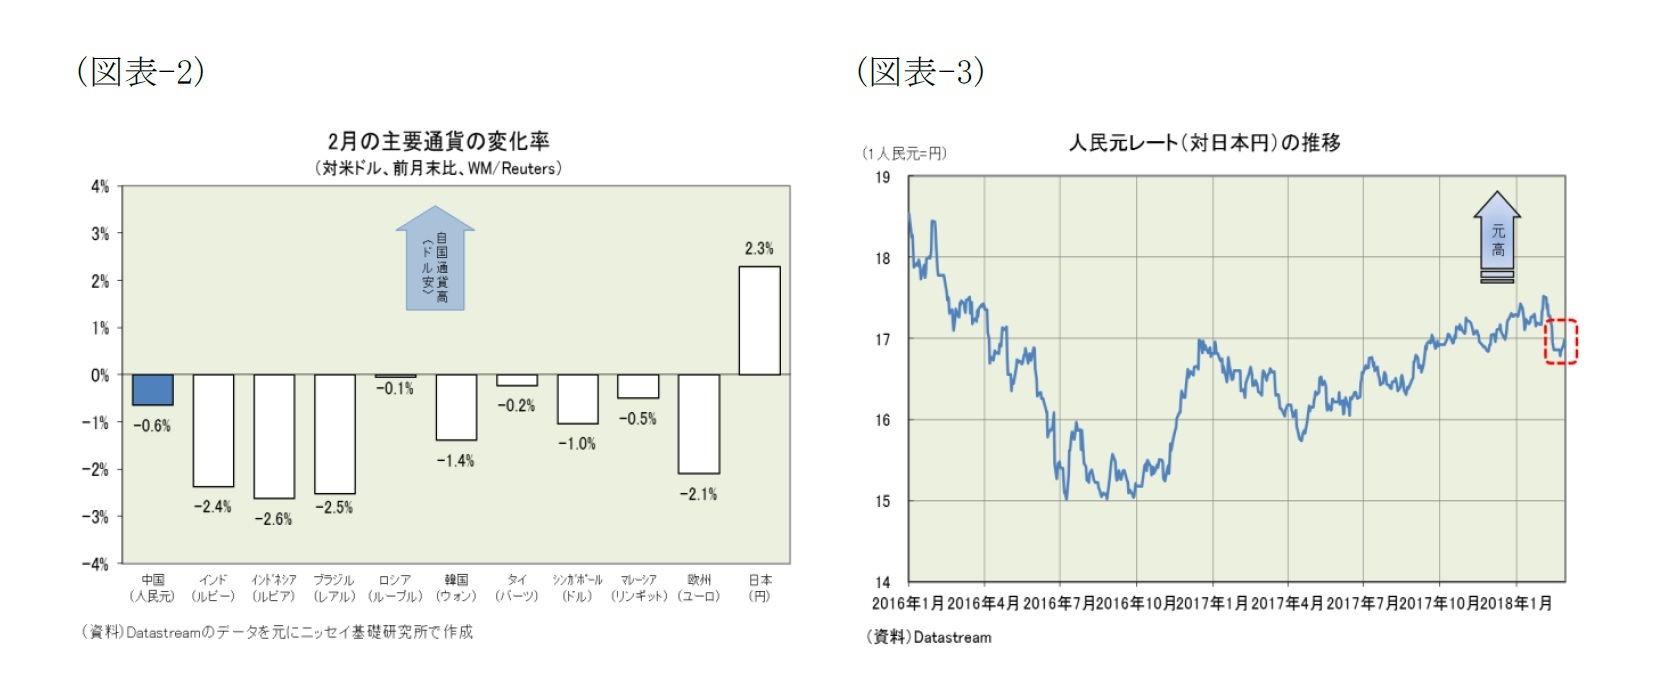 (図表-2)２月の主要通貨の変化率（対米ドル、全月末比、WM/Reuters）/(図表-3)人民元レート（対日本円）の推移